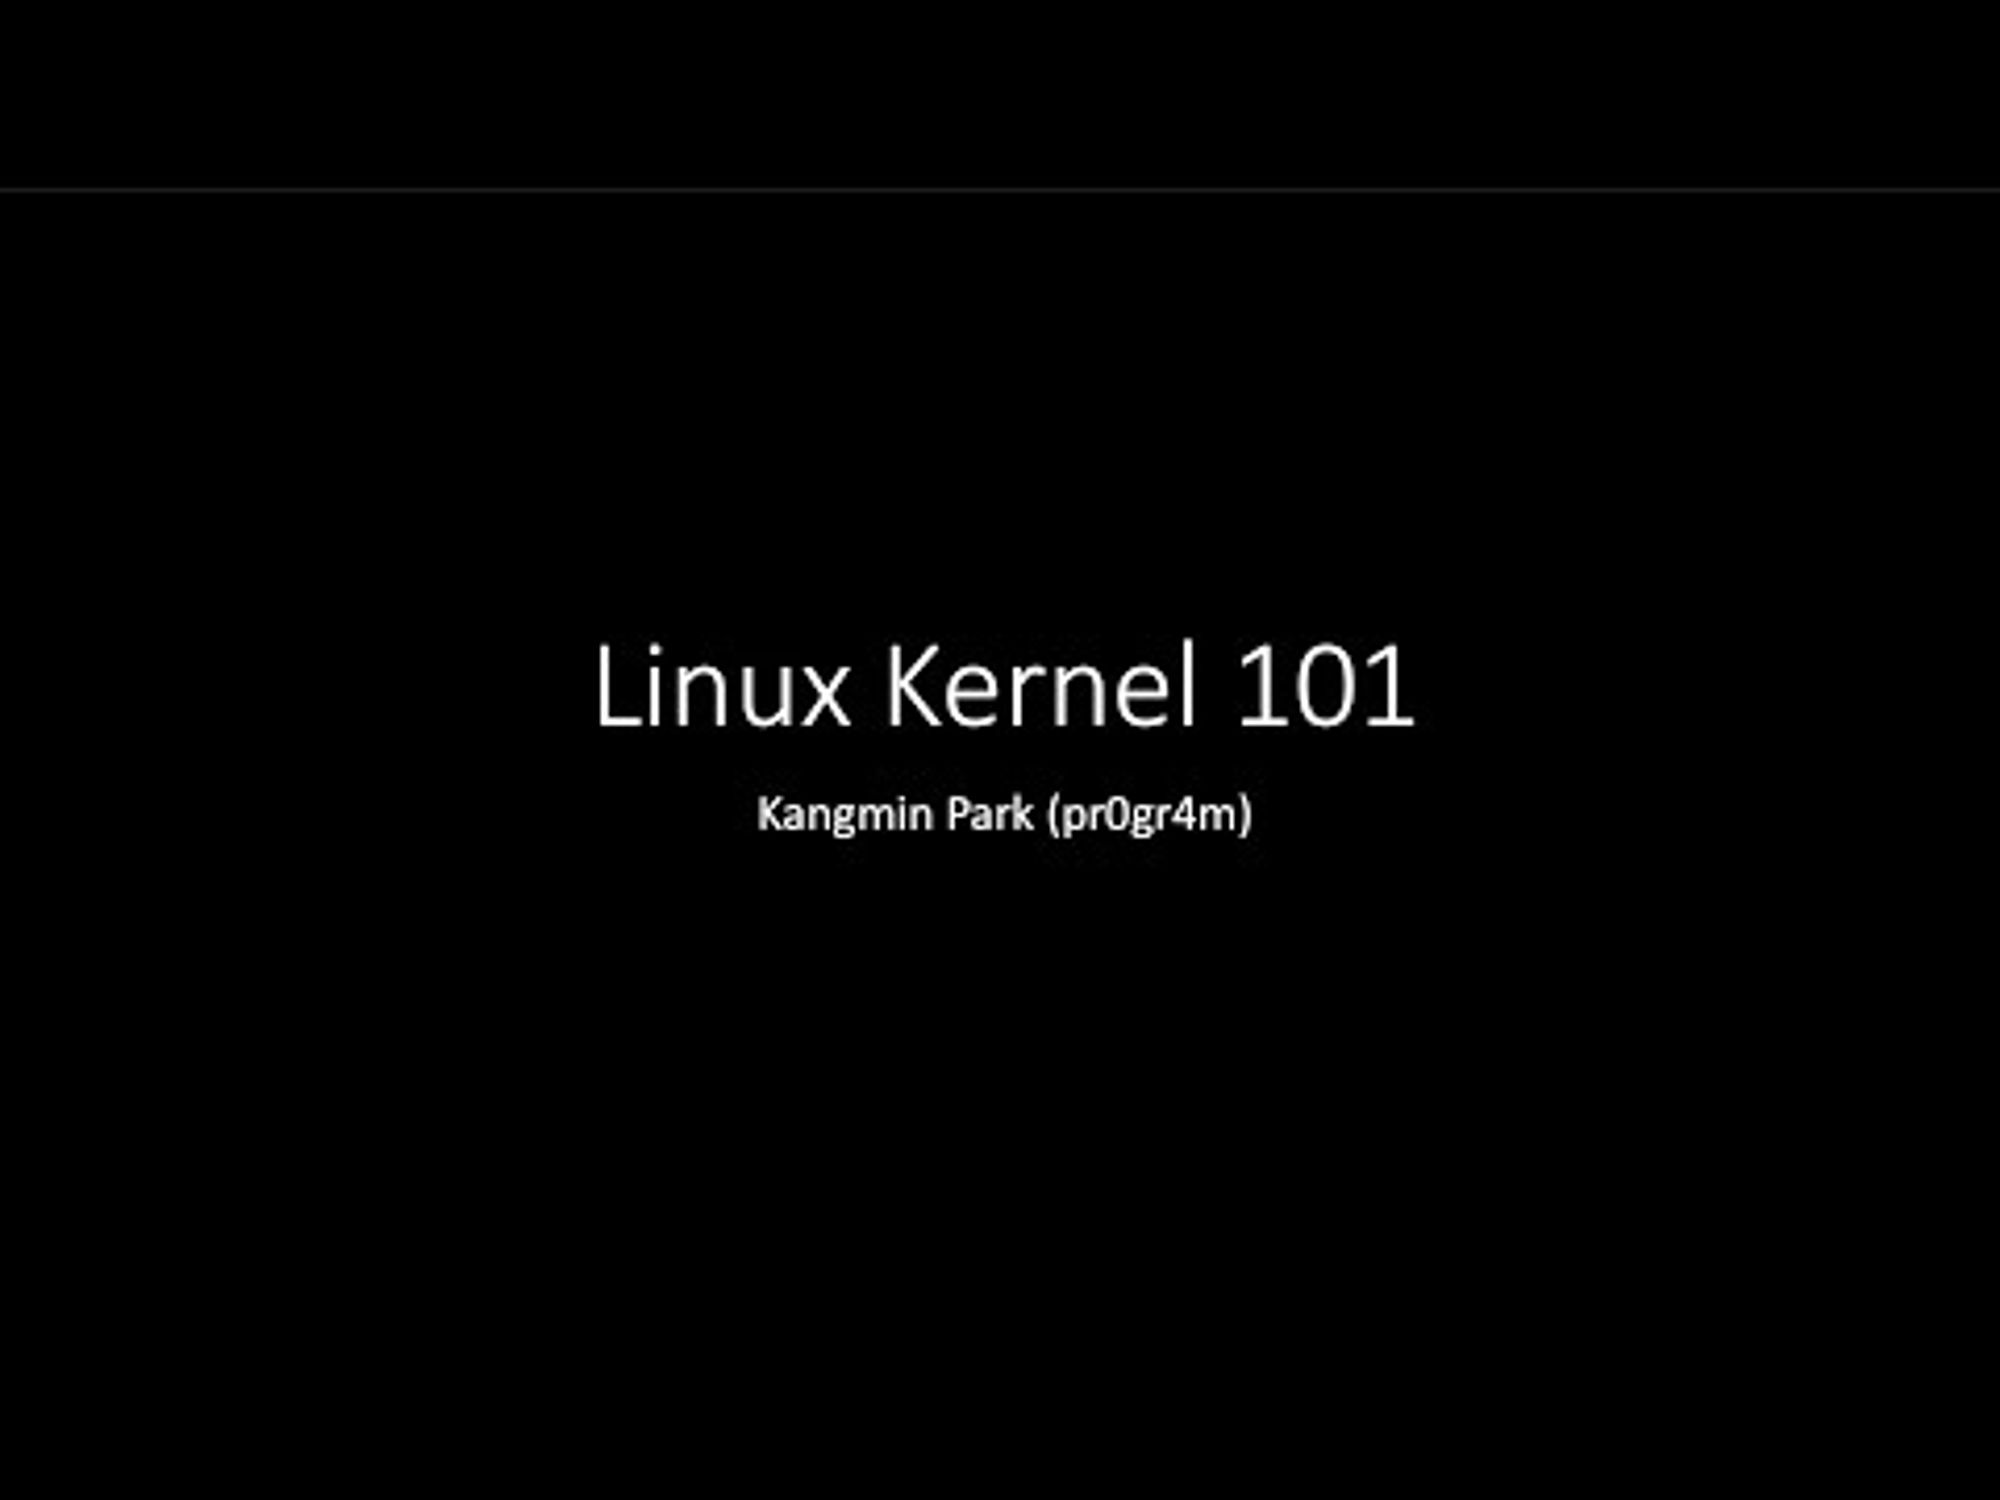 Linux Kernel 101 for Beginner